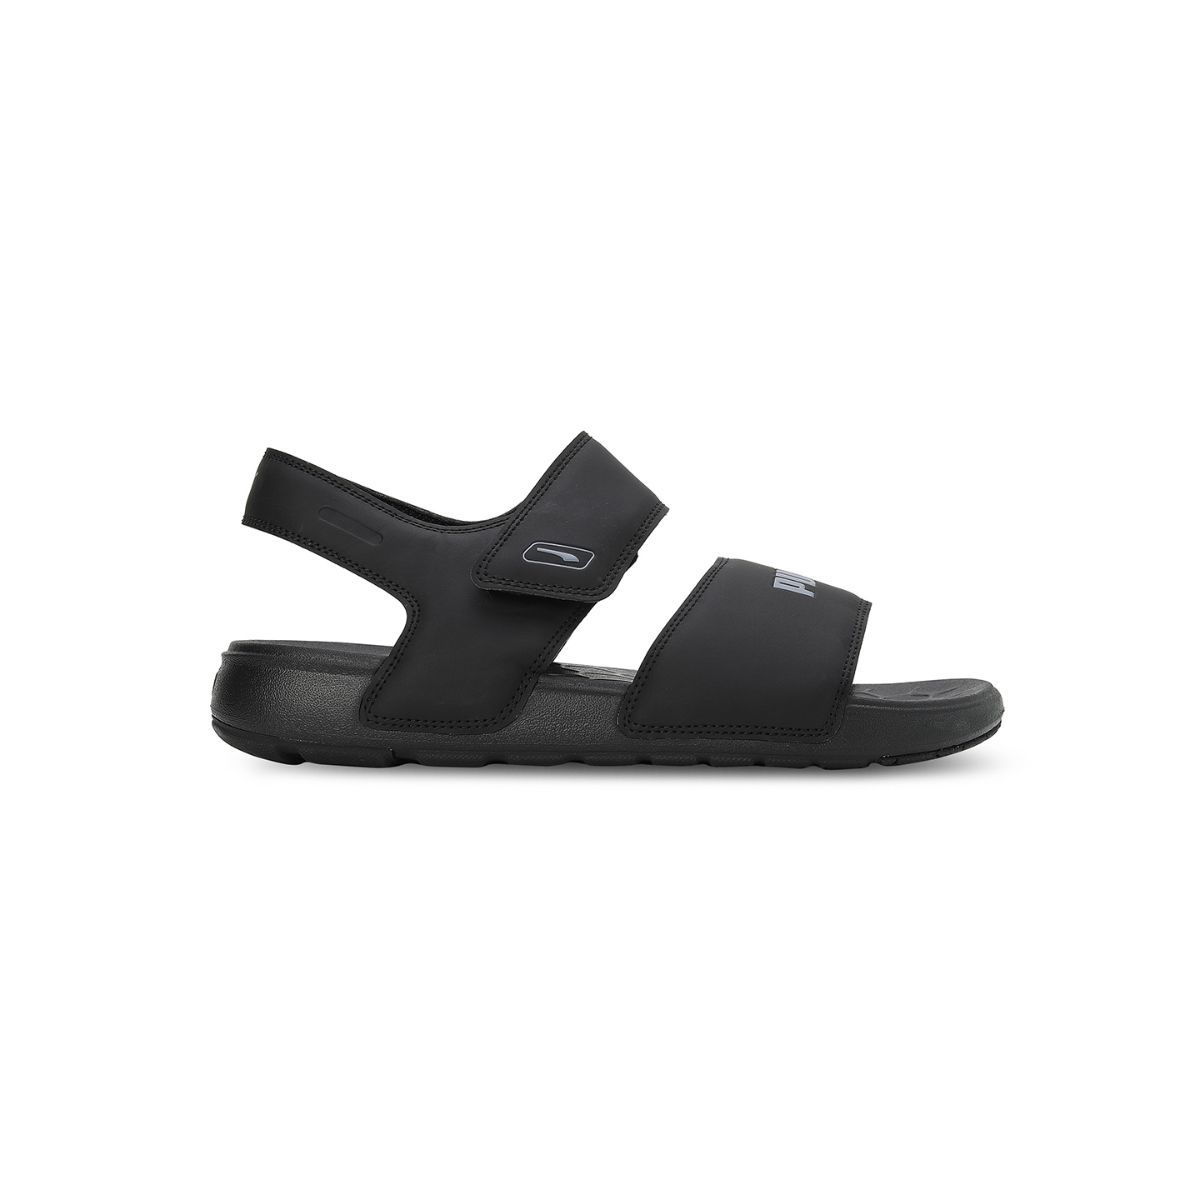 Nike Sandals Womens 9 Comfort Footbed Slide Adjustable Black | eBay